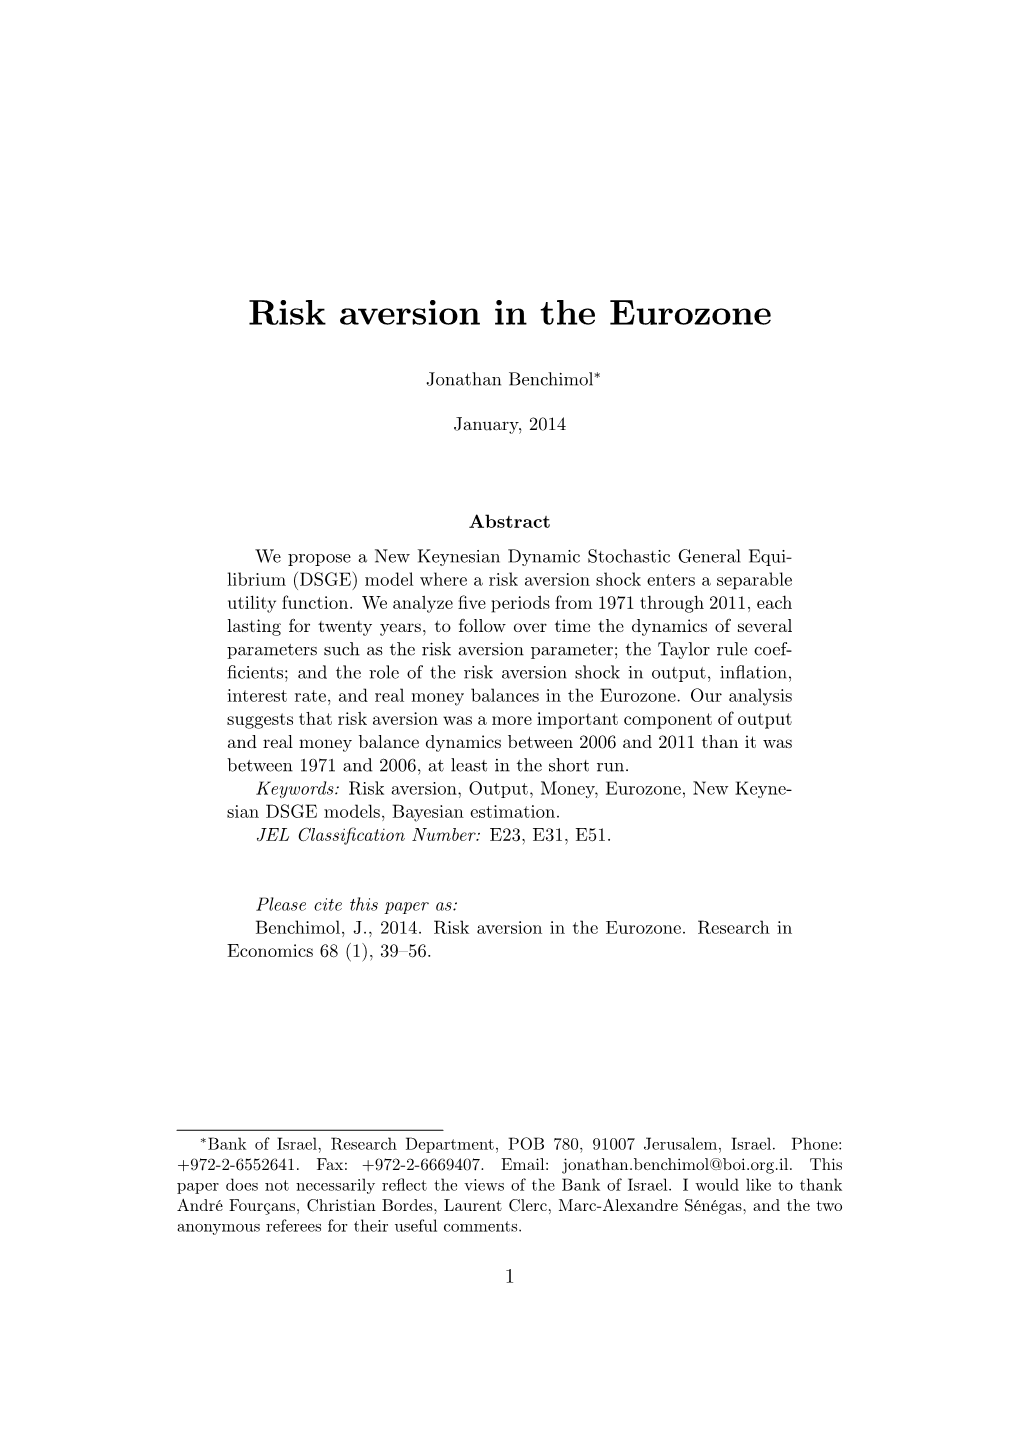 Risk Aversion in the Eurozone